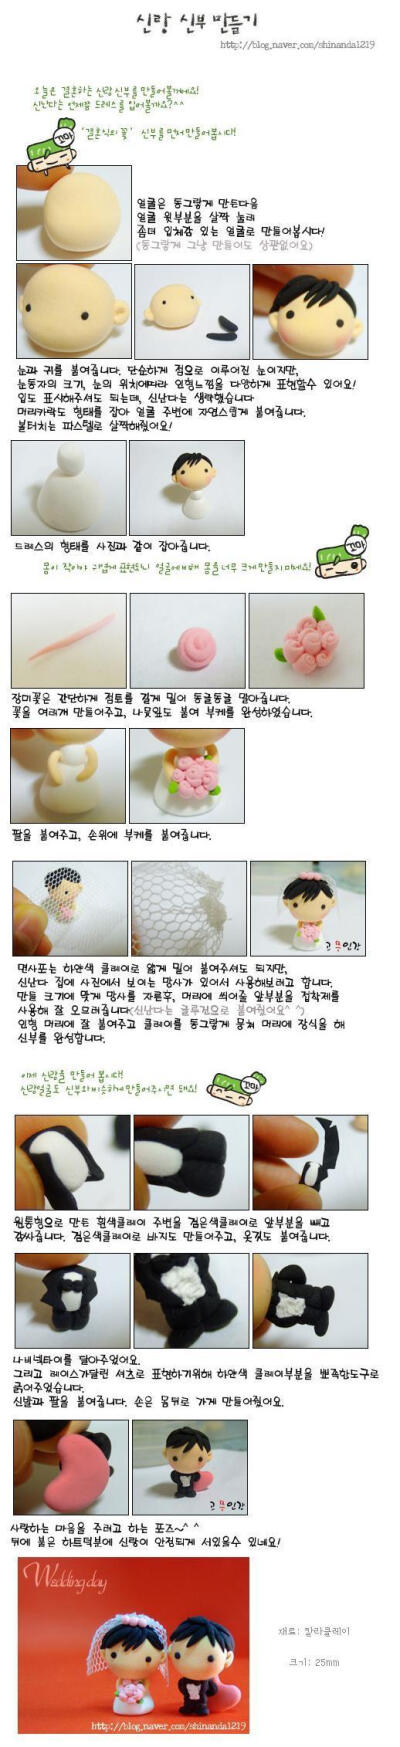 简单可爱的韩国超轻教程——可爱新郎新娘